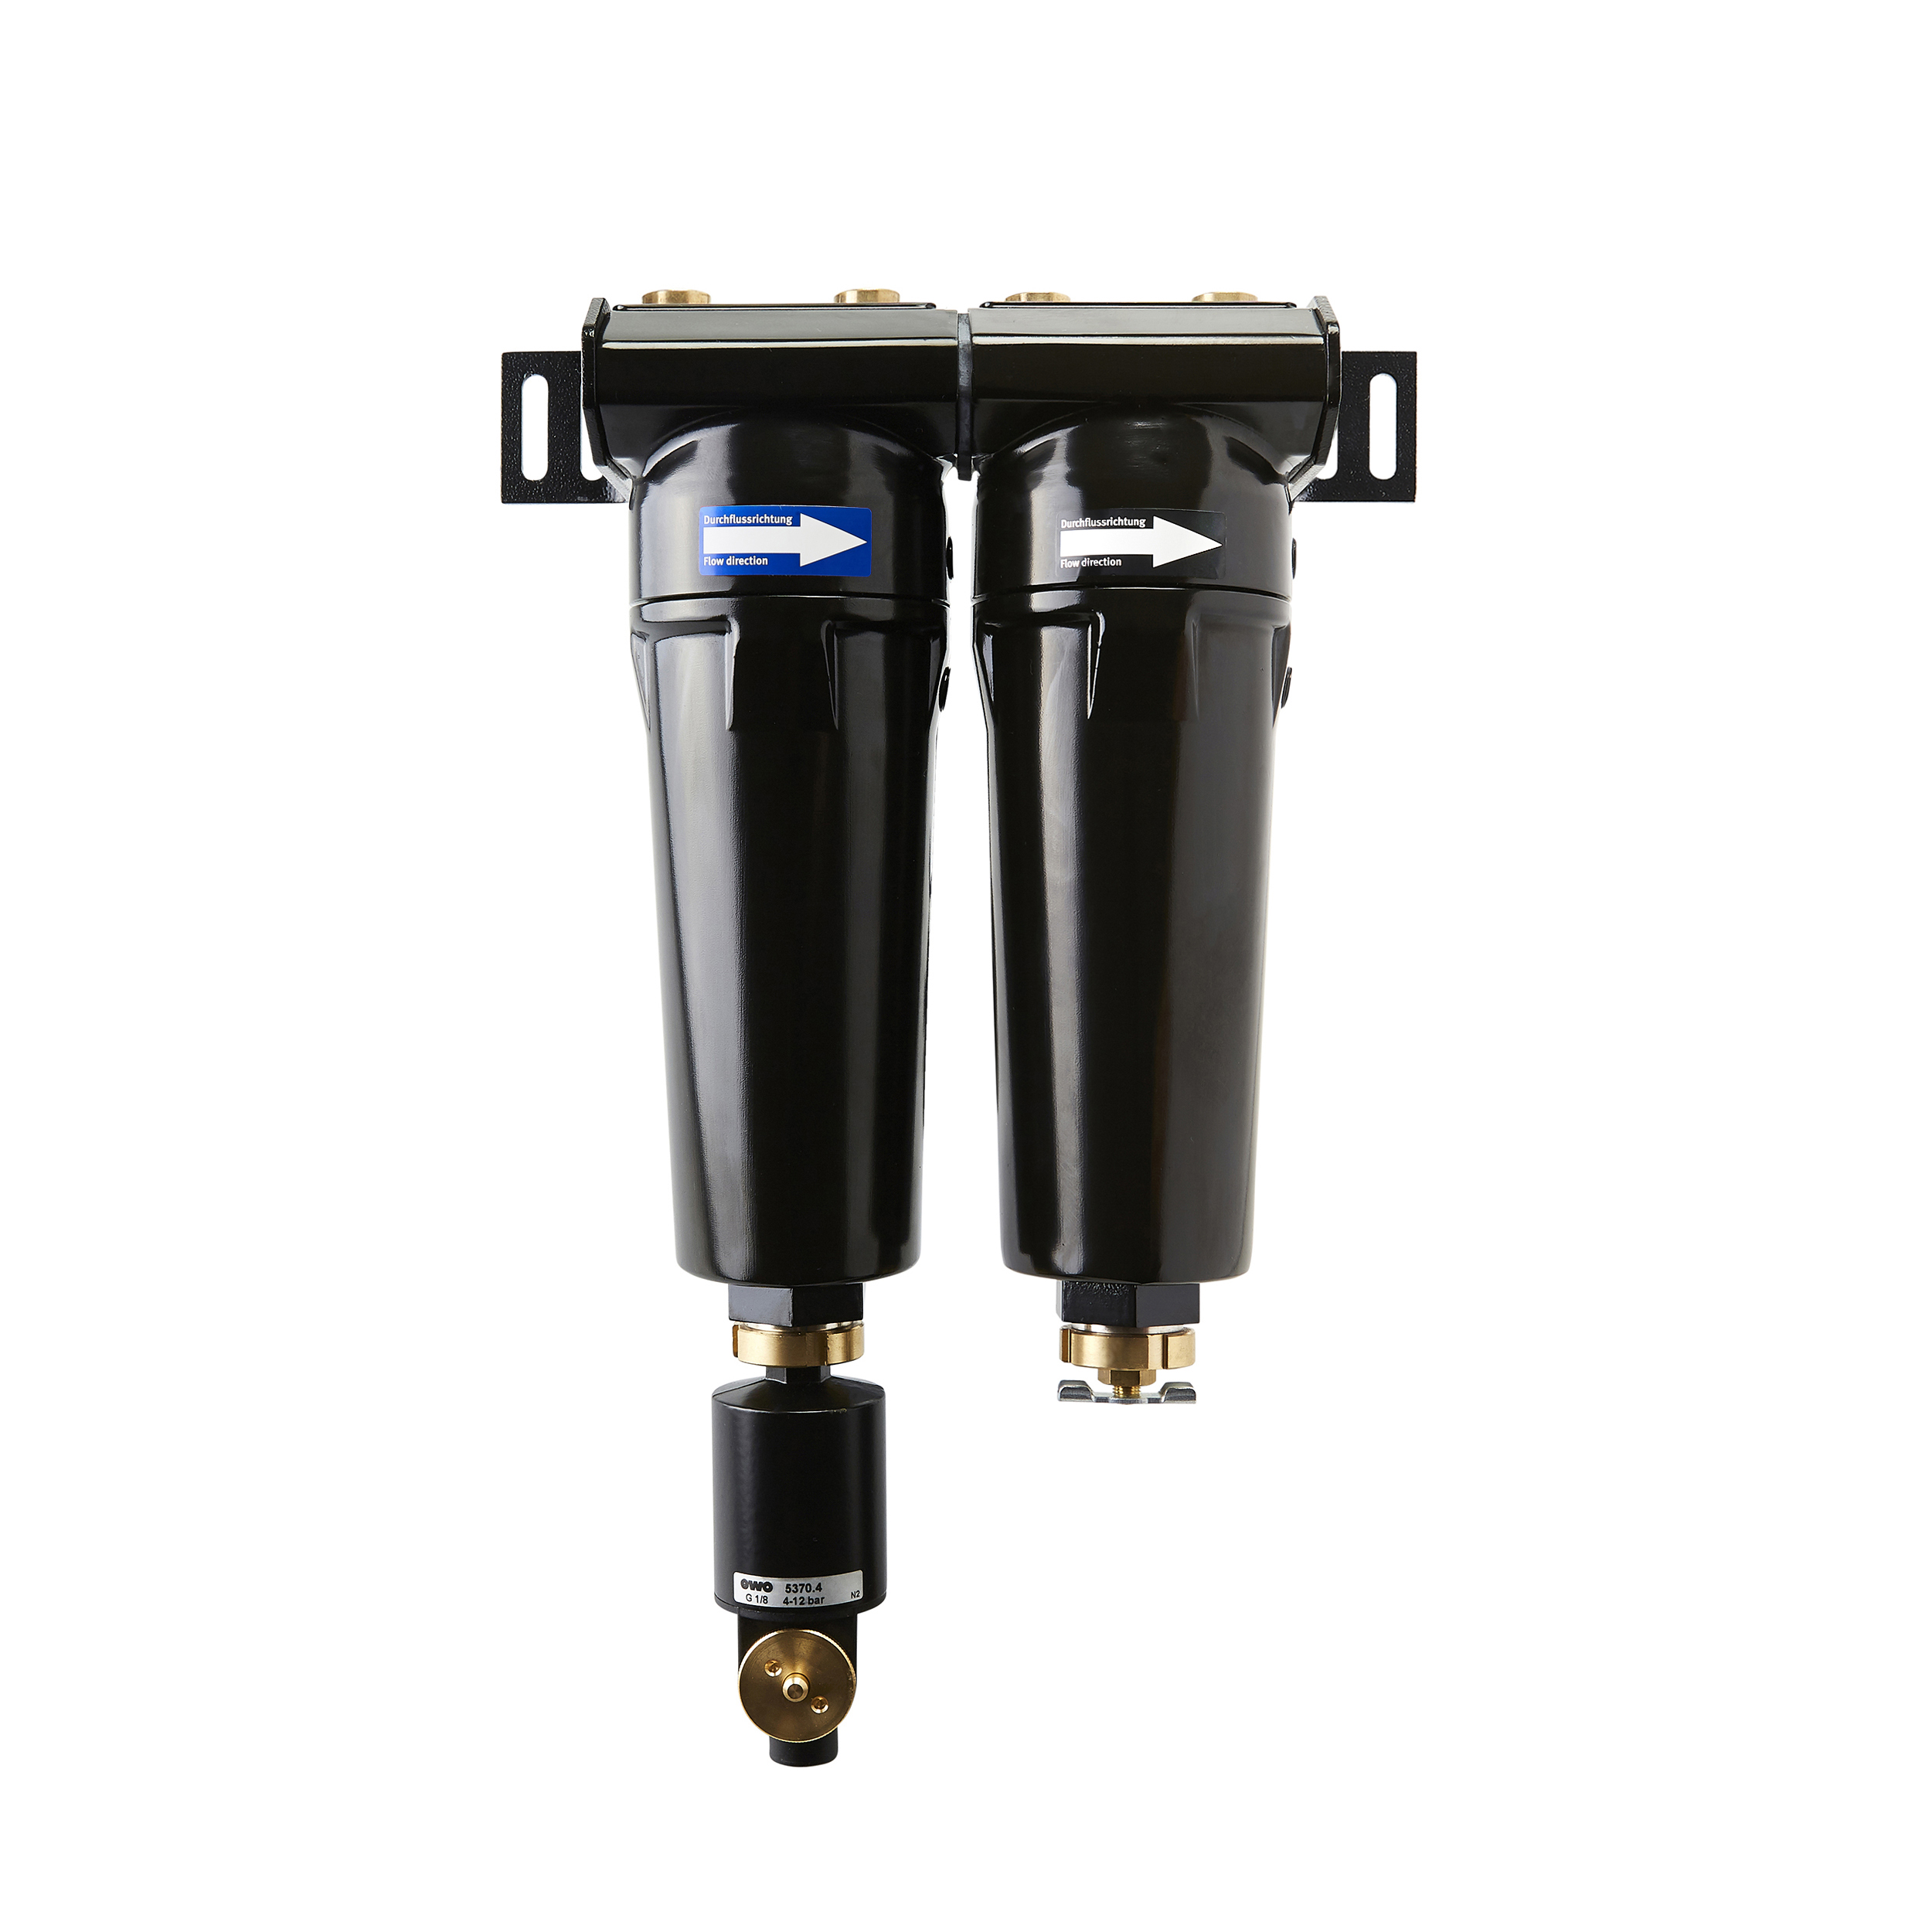 airclean, microfilter–activ. carbon filter, BG 50, G¼, attach. drain valve A, manual drain valve, MOP: 16 bar